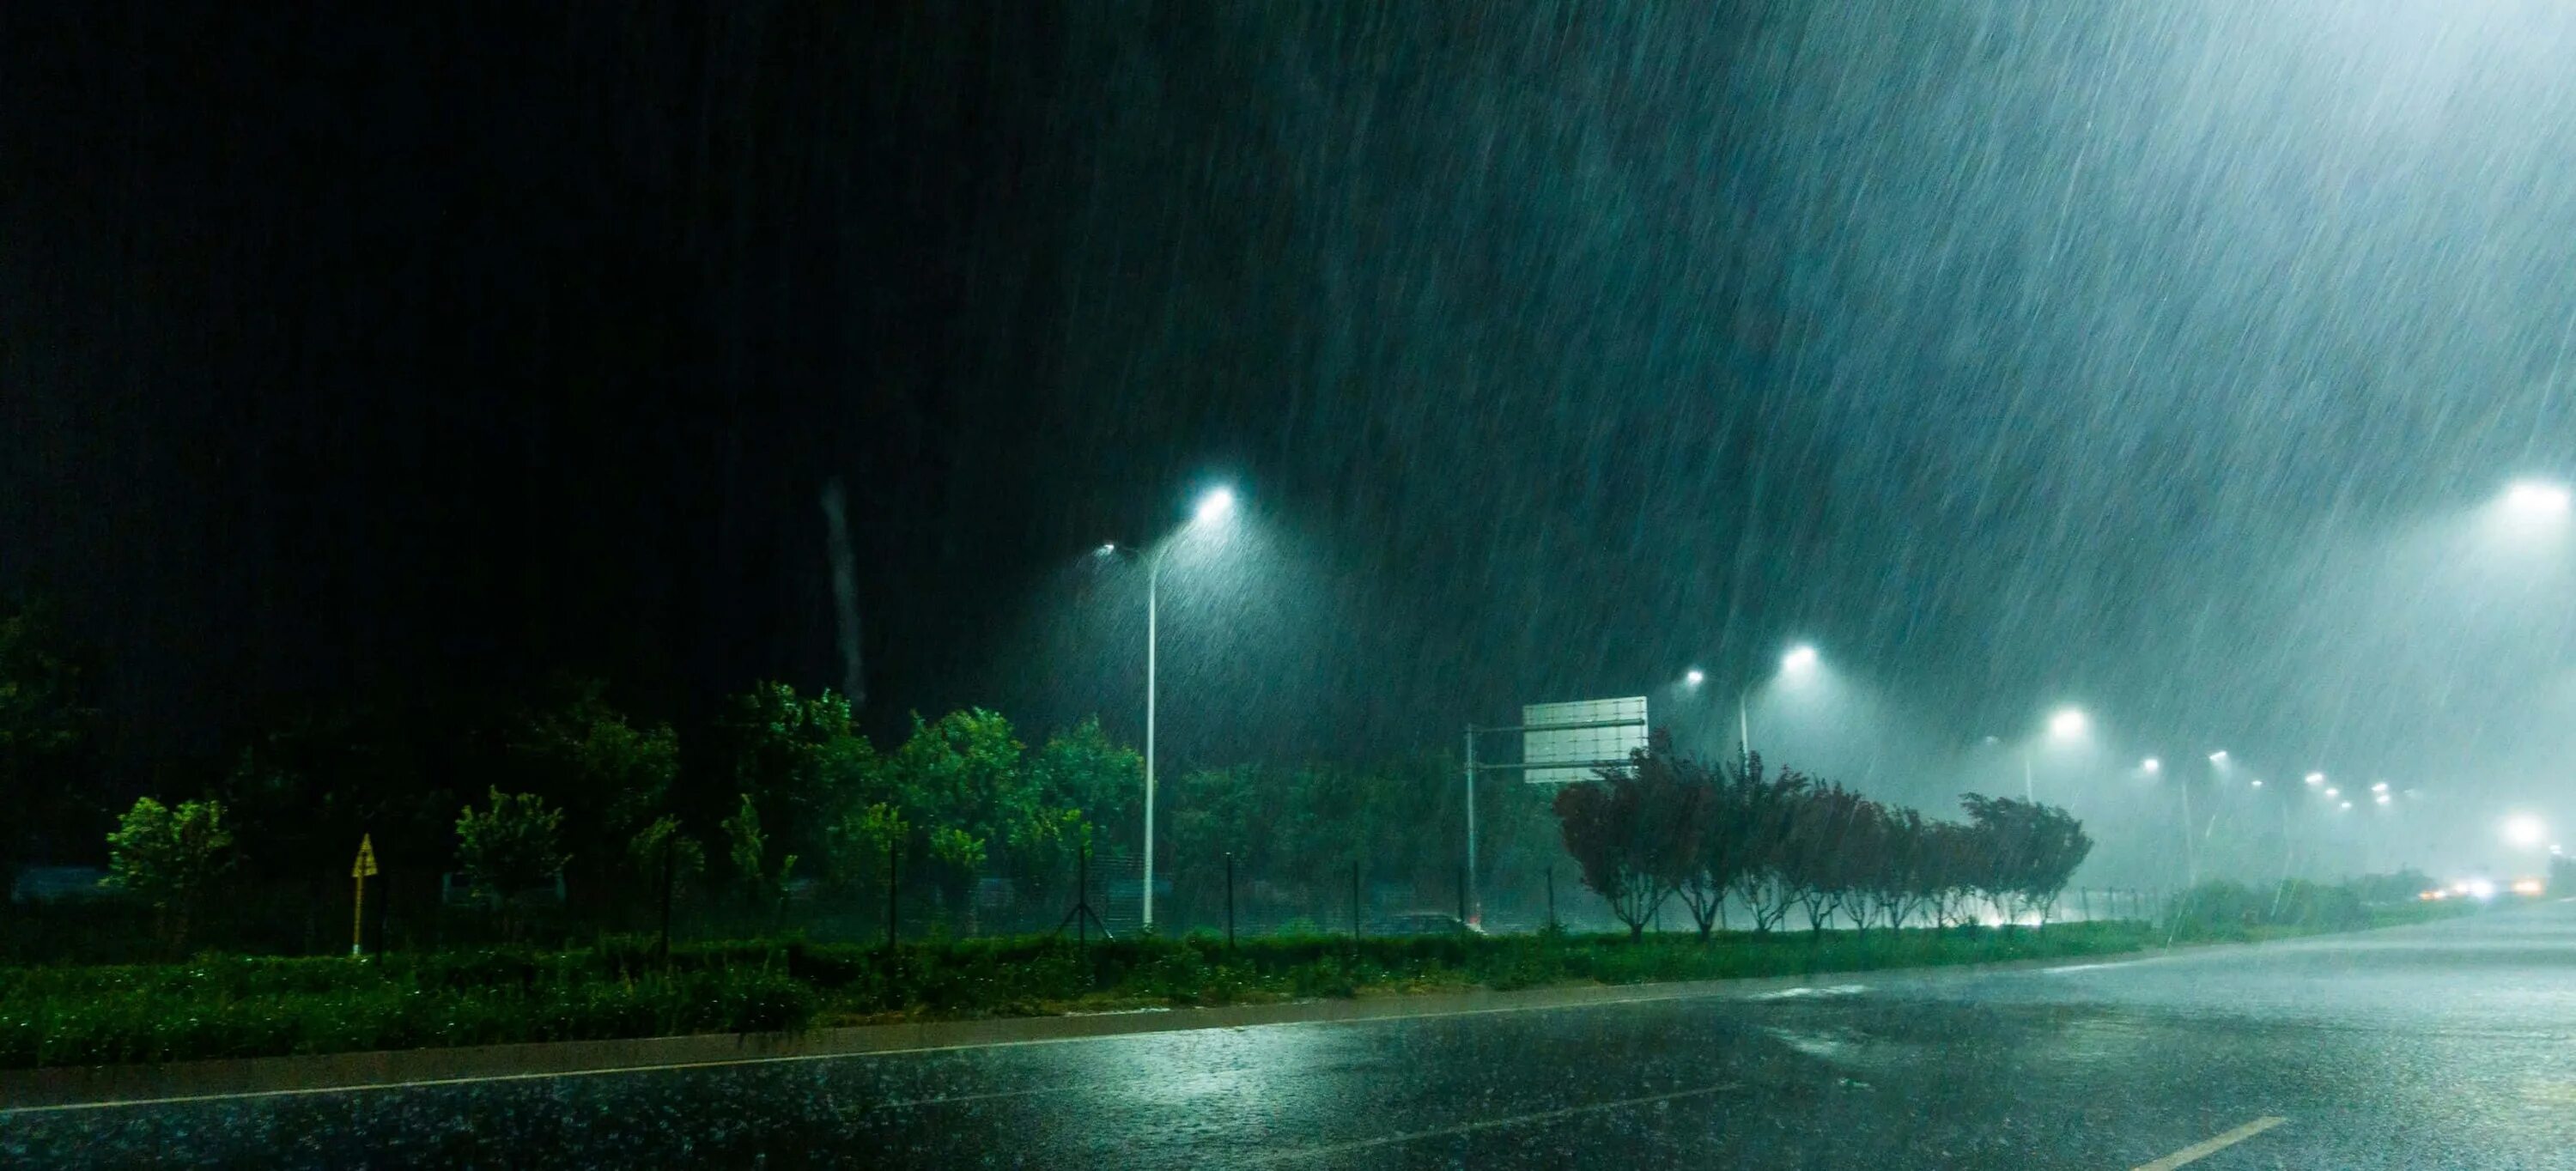 Дождь ночью. Дождливая ночь. Дождик ночью. Дождливые дороги ночью. Сегодня ночь дождь есть